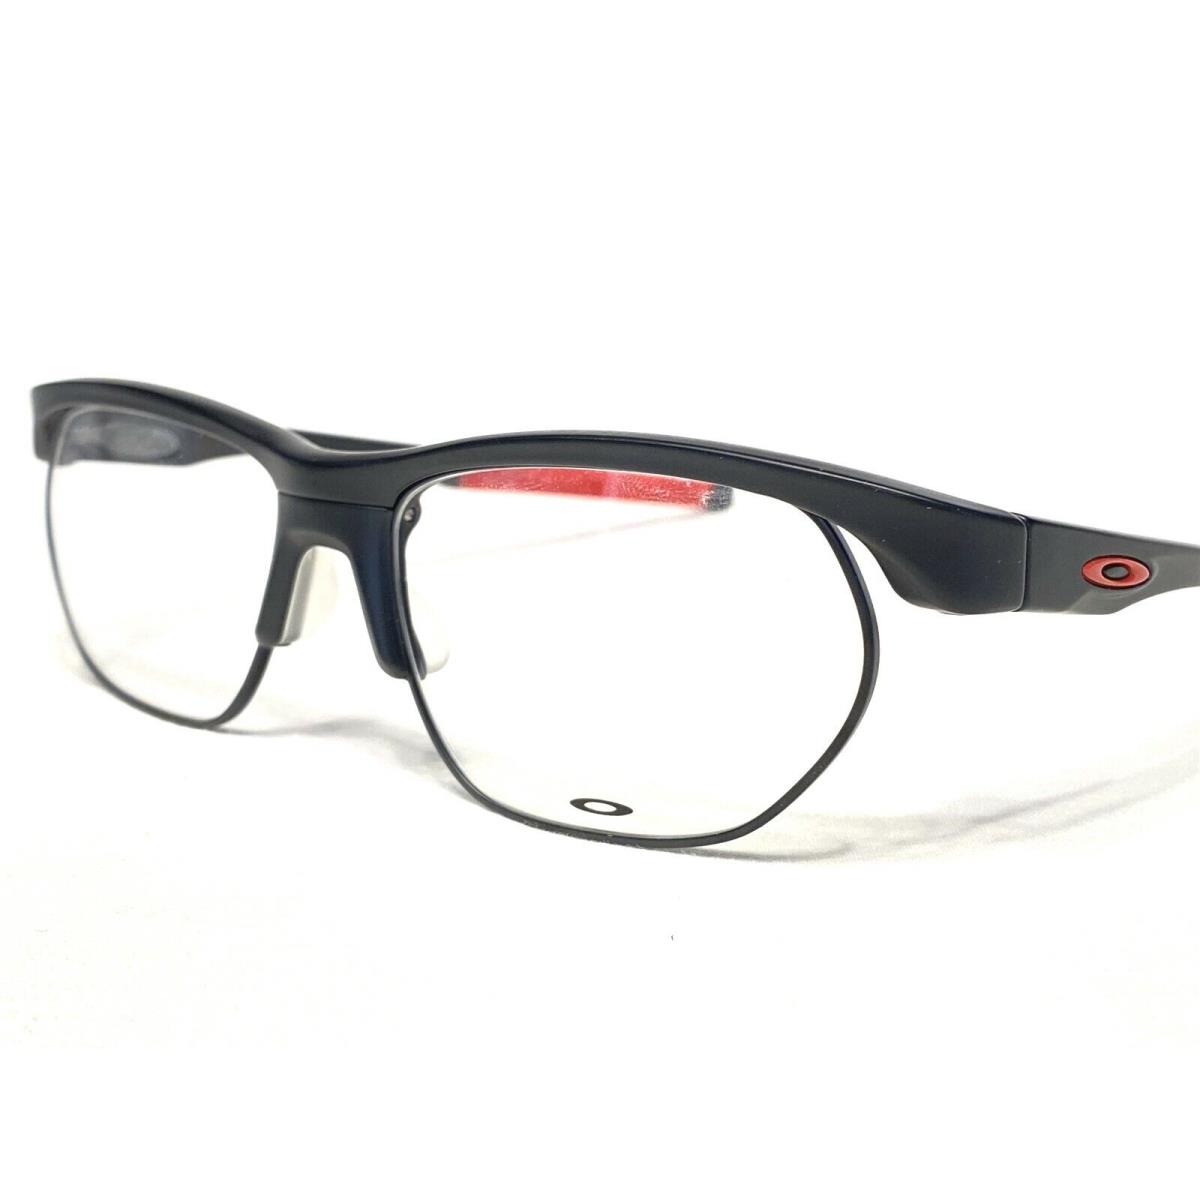 Oakley Crosslink Float OX3221-0456 Mens Satin Black Eyeglasses Frames 56/17 - Satin Black/Red, Frame: Satin Black/Red, Manufacturer: